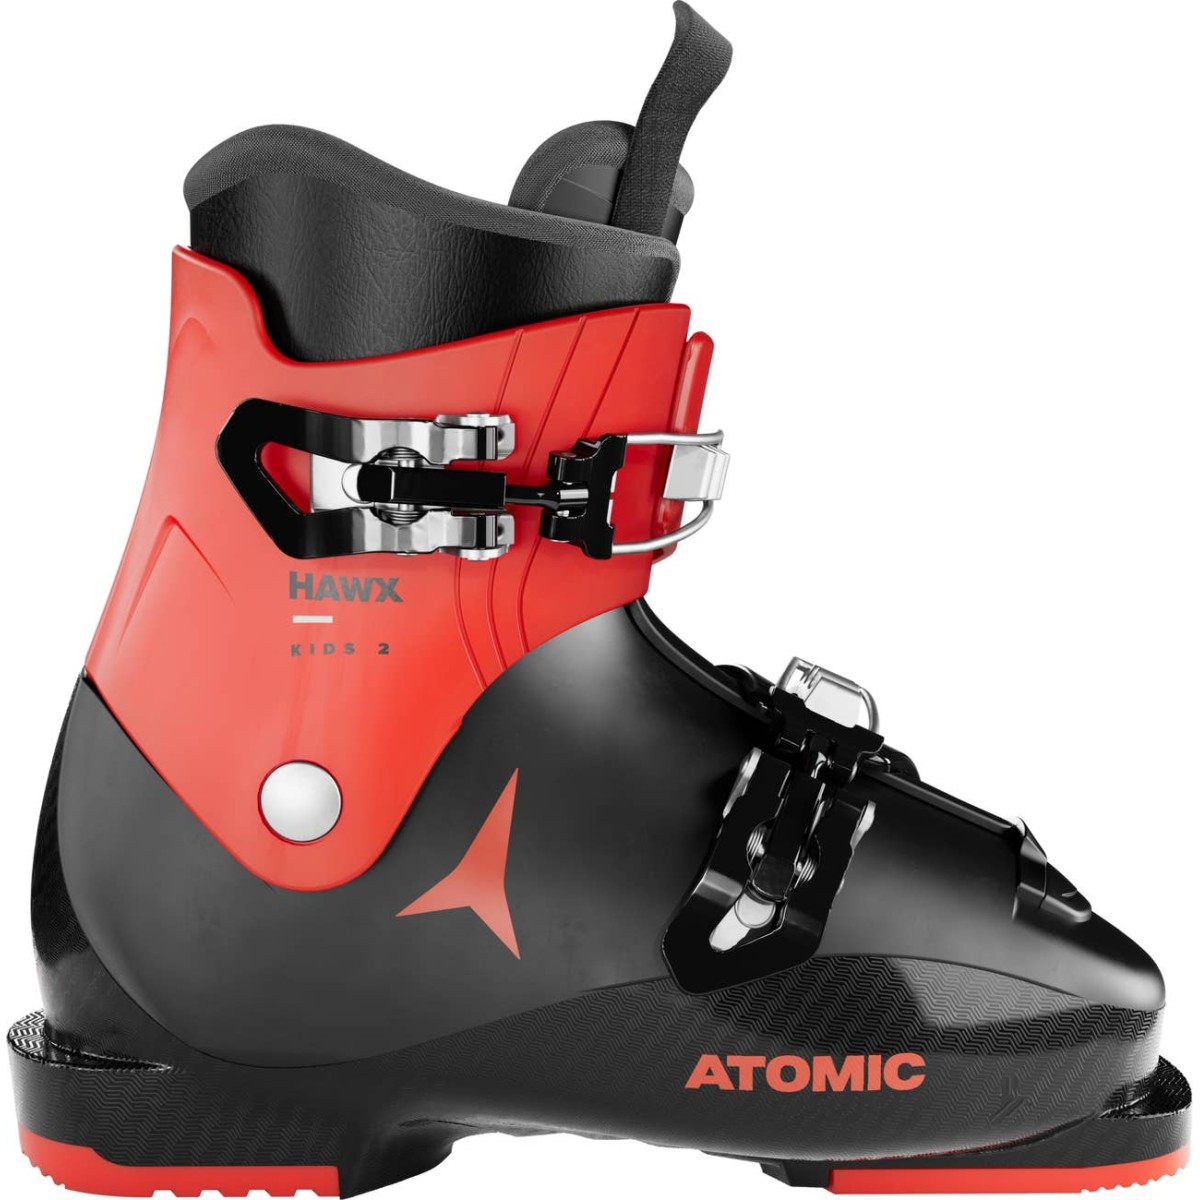 ATOMIC HAWX KIDS 2 alpine ski boots - black/red